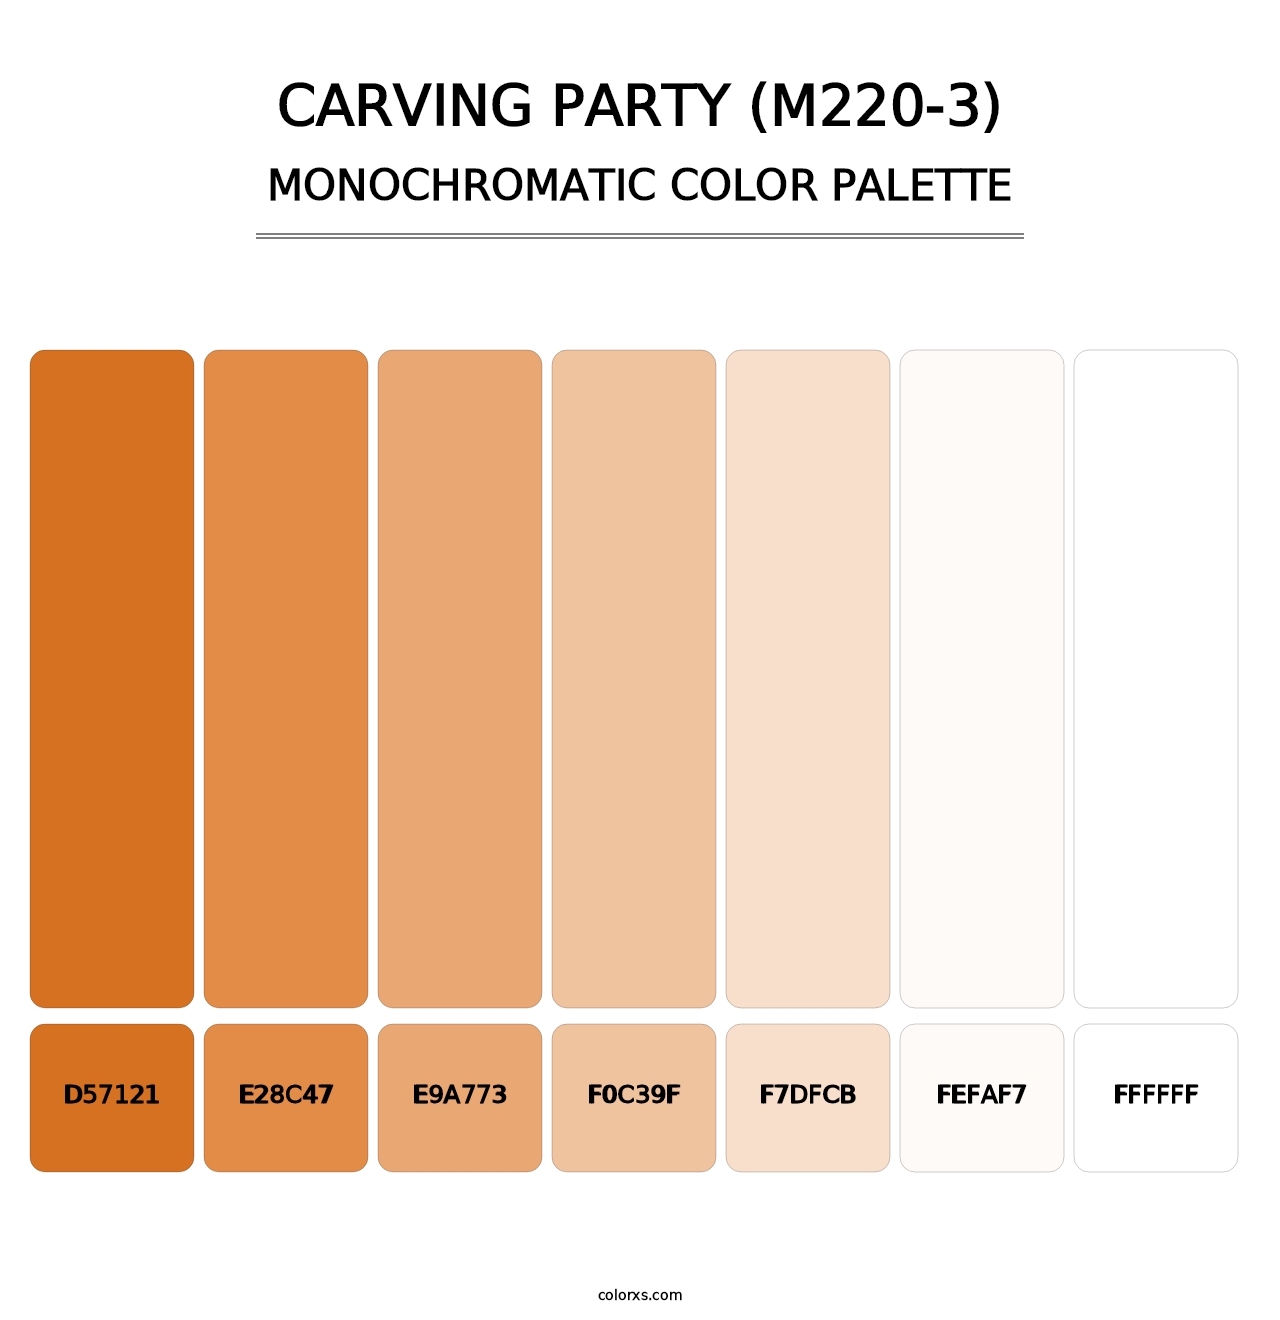 Carving Party (M220-3) - Monochromatic Color Palette